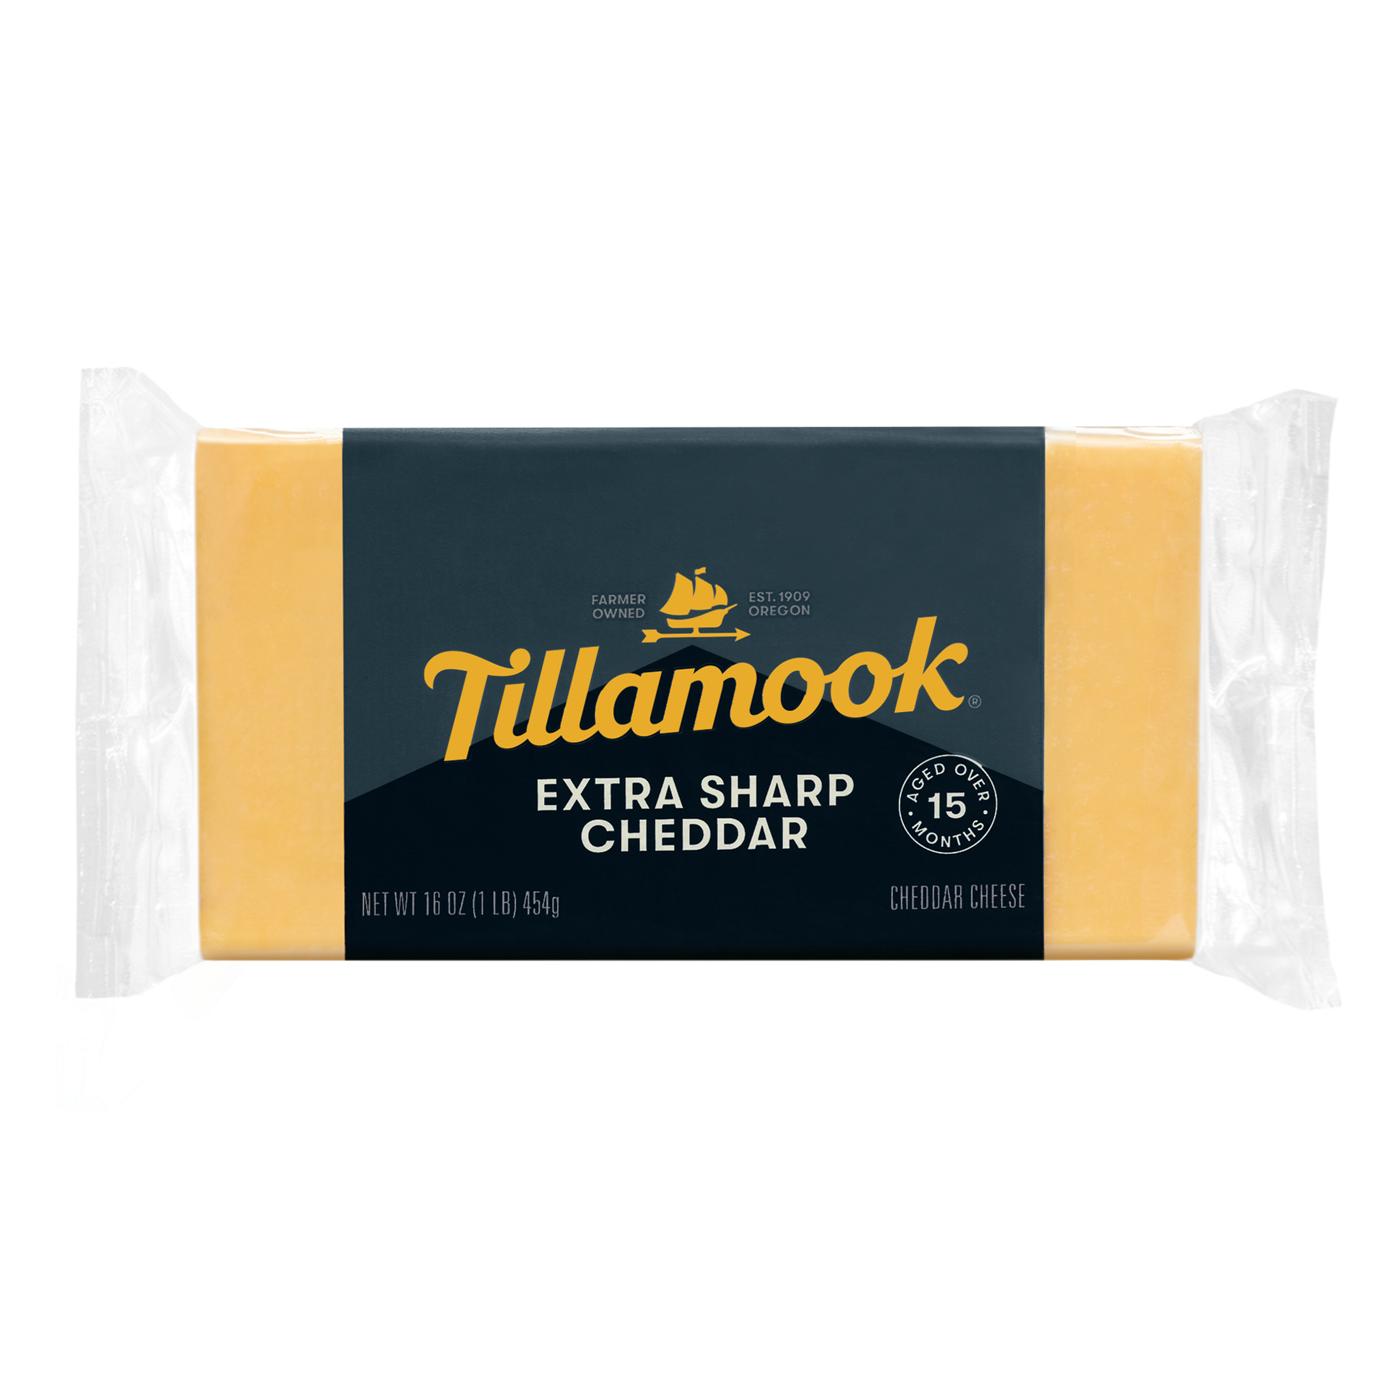 Tillamook Extra Sharp Cheddar Cheese; image 1 of 4